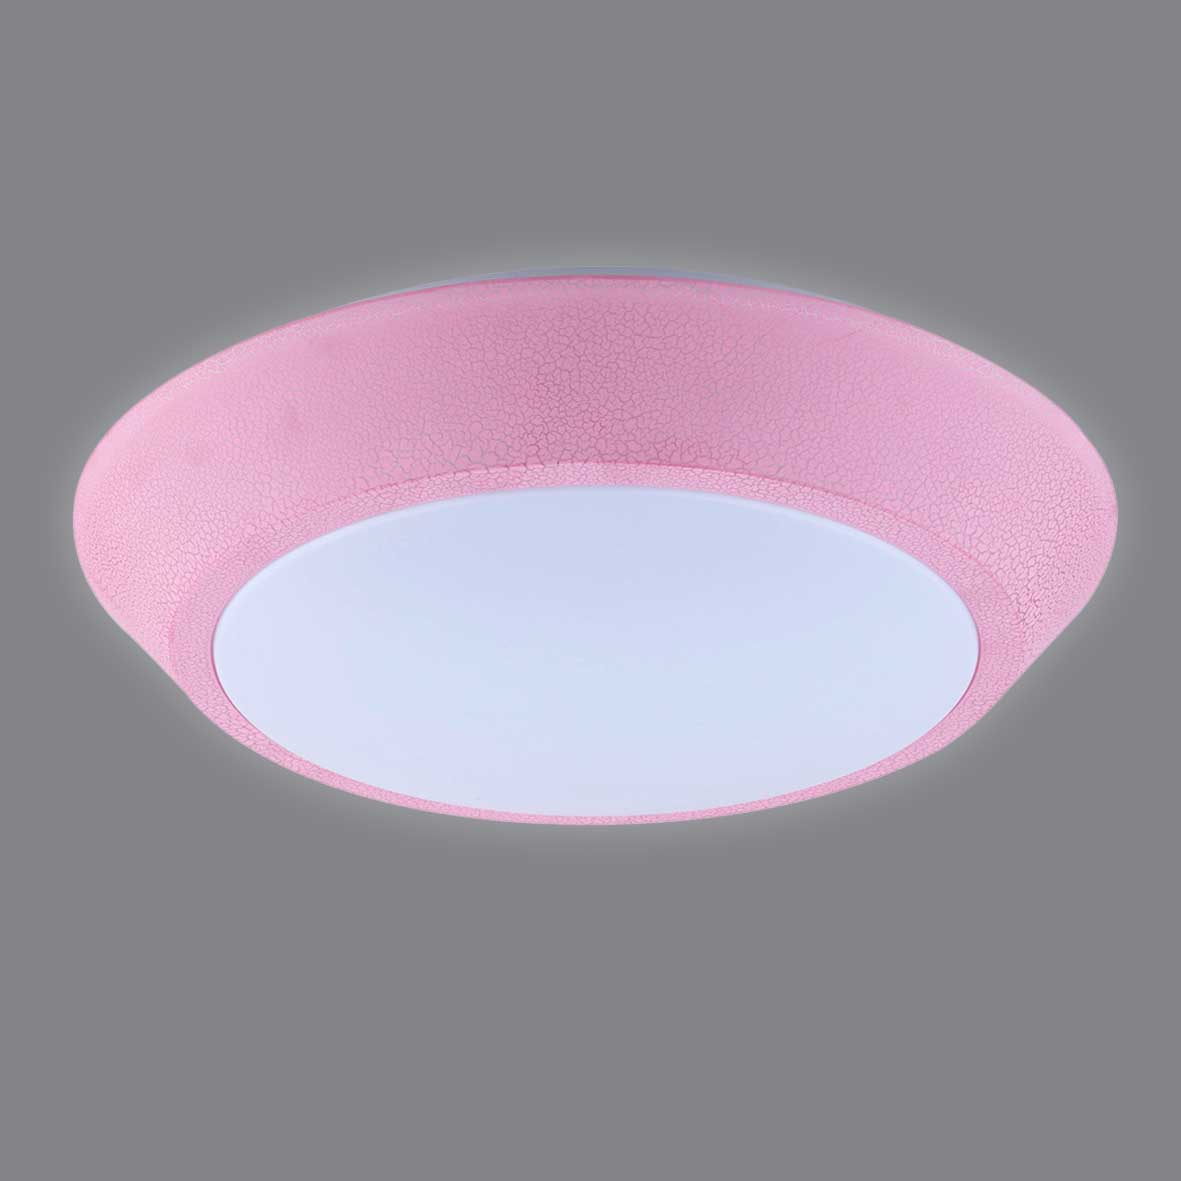 Ceiling Lamp,Household Lighting,Bedroom,Pink,Simple,16W,20W